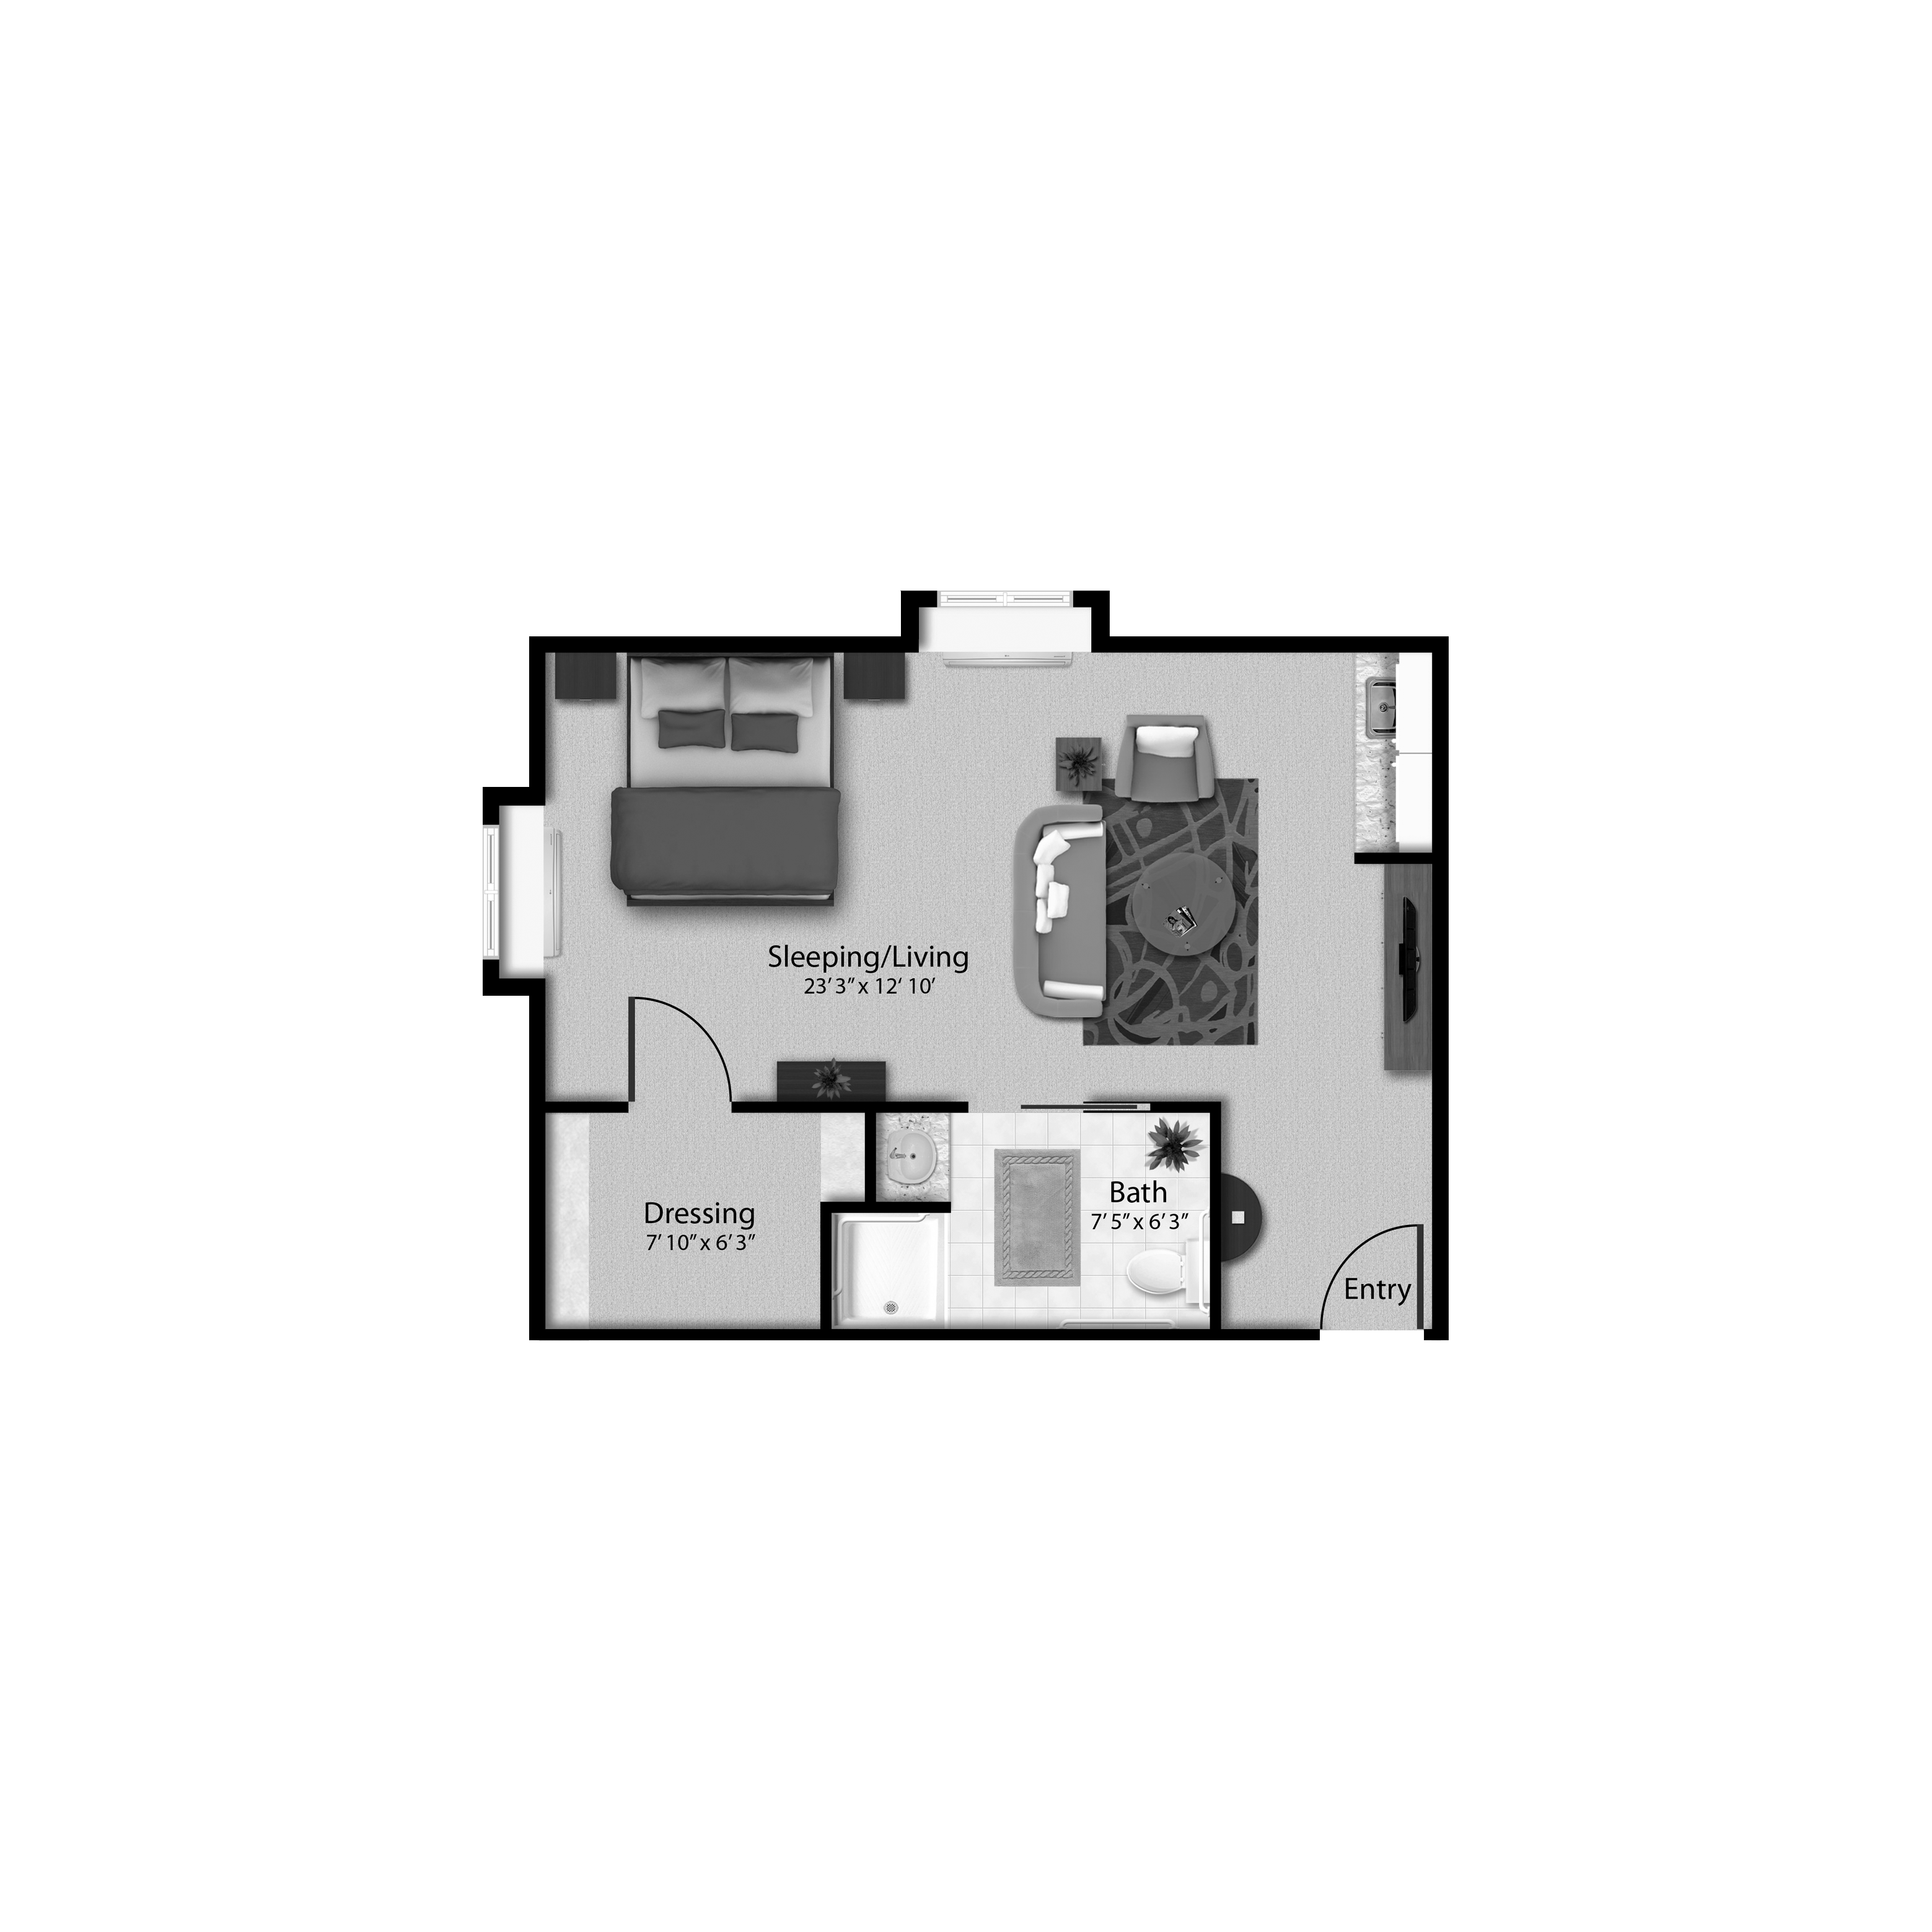 Plaza Suite floor plan